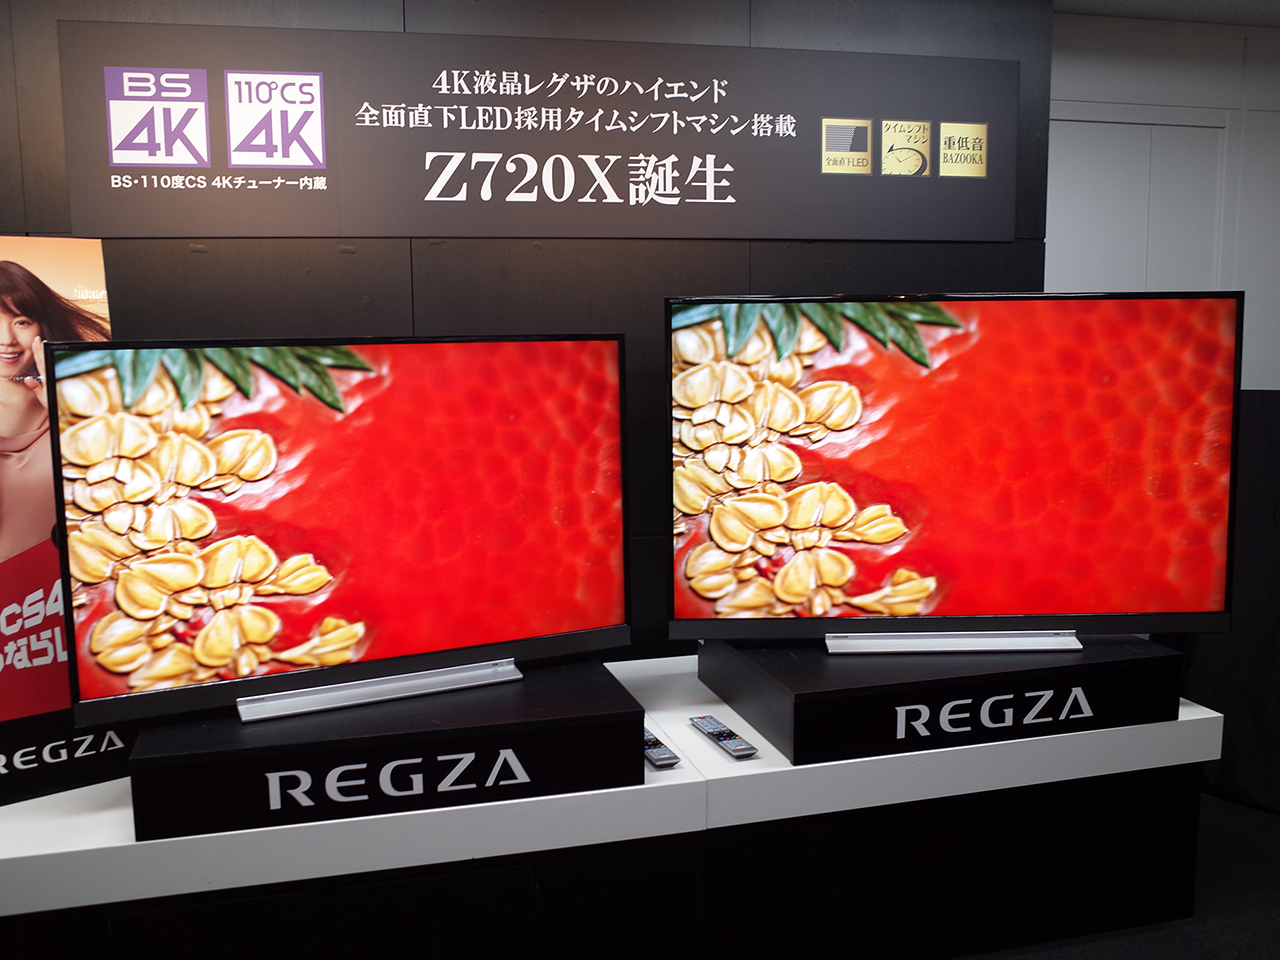 TOSHIBA REGZA Z720X 49Z720X - テレビ